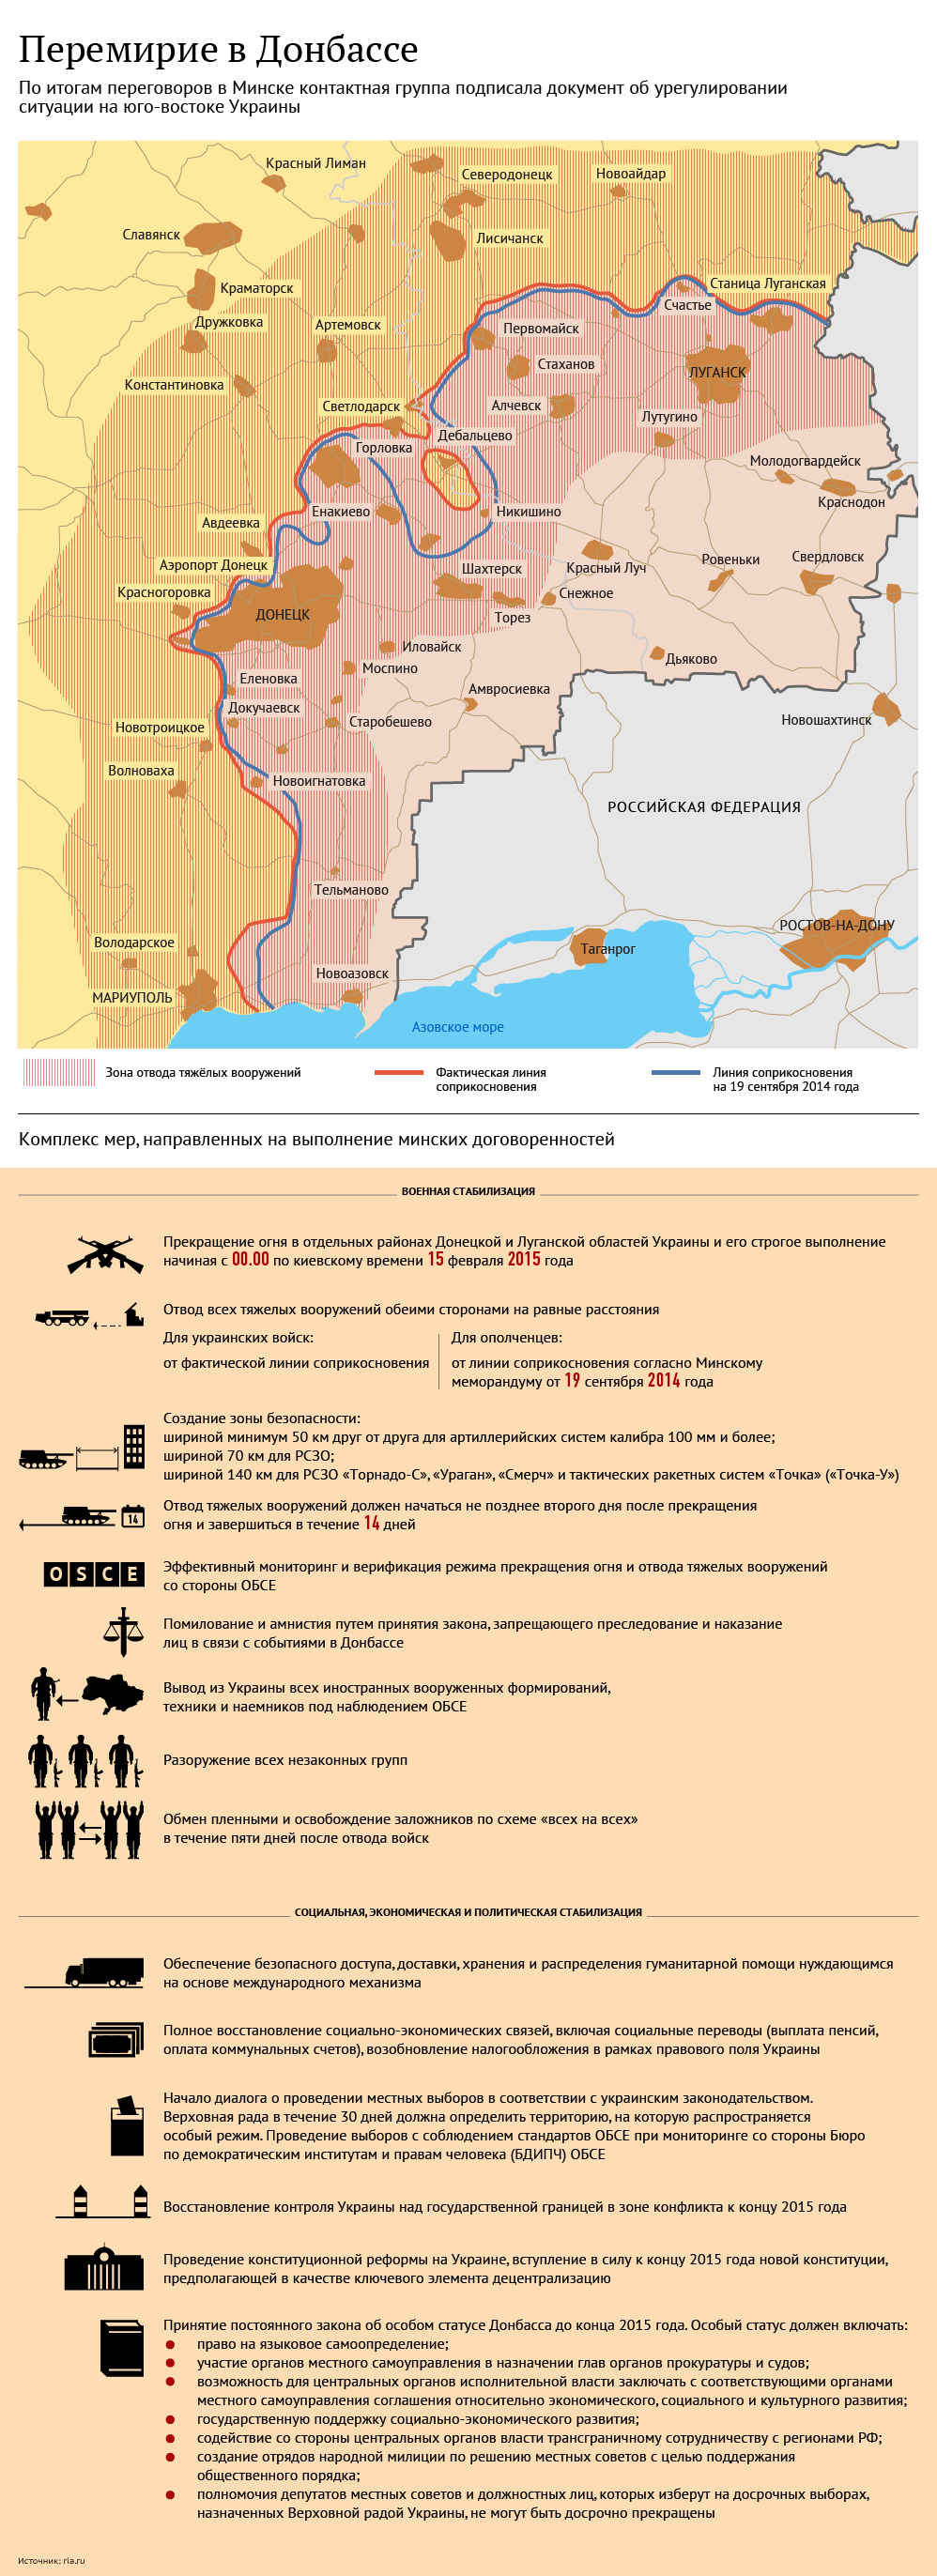 Новое перемирие в Донбассе